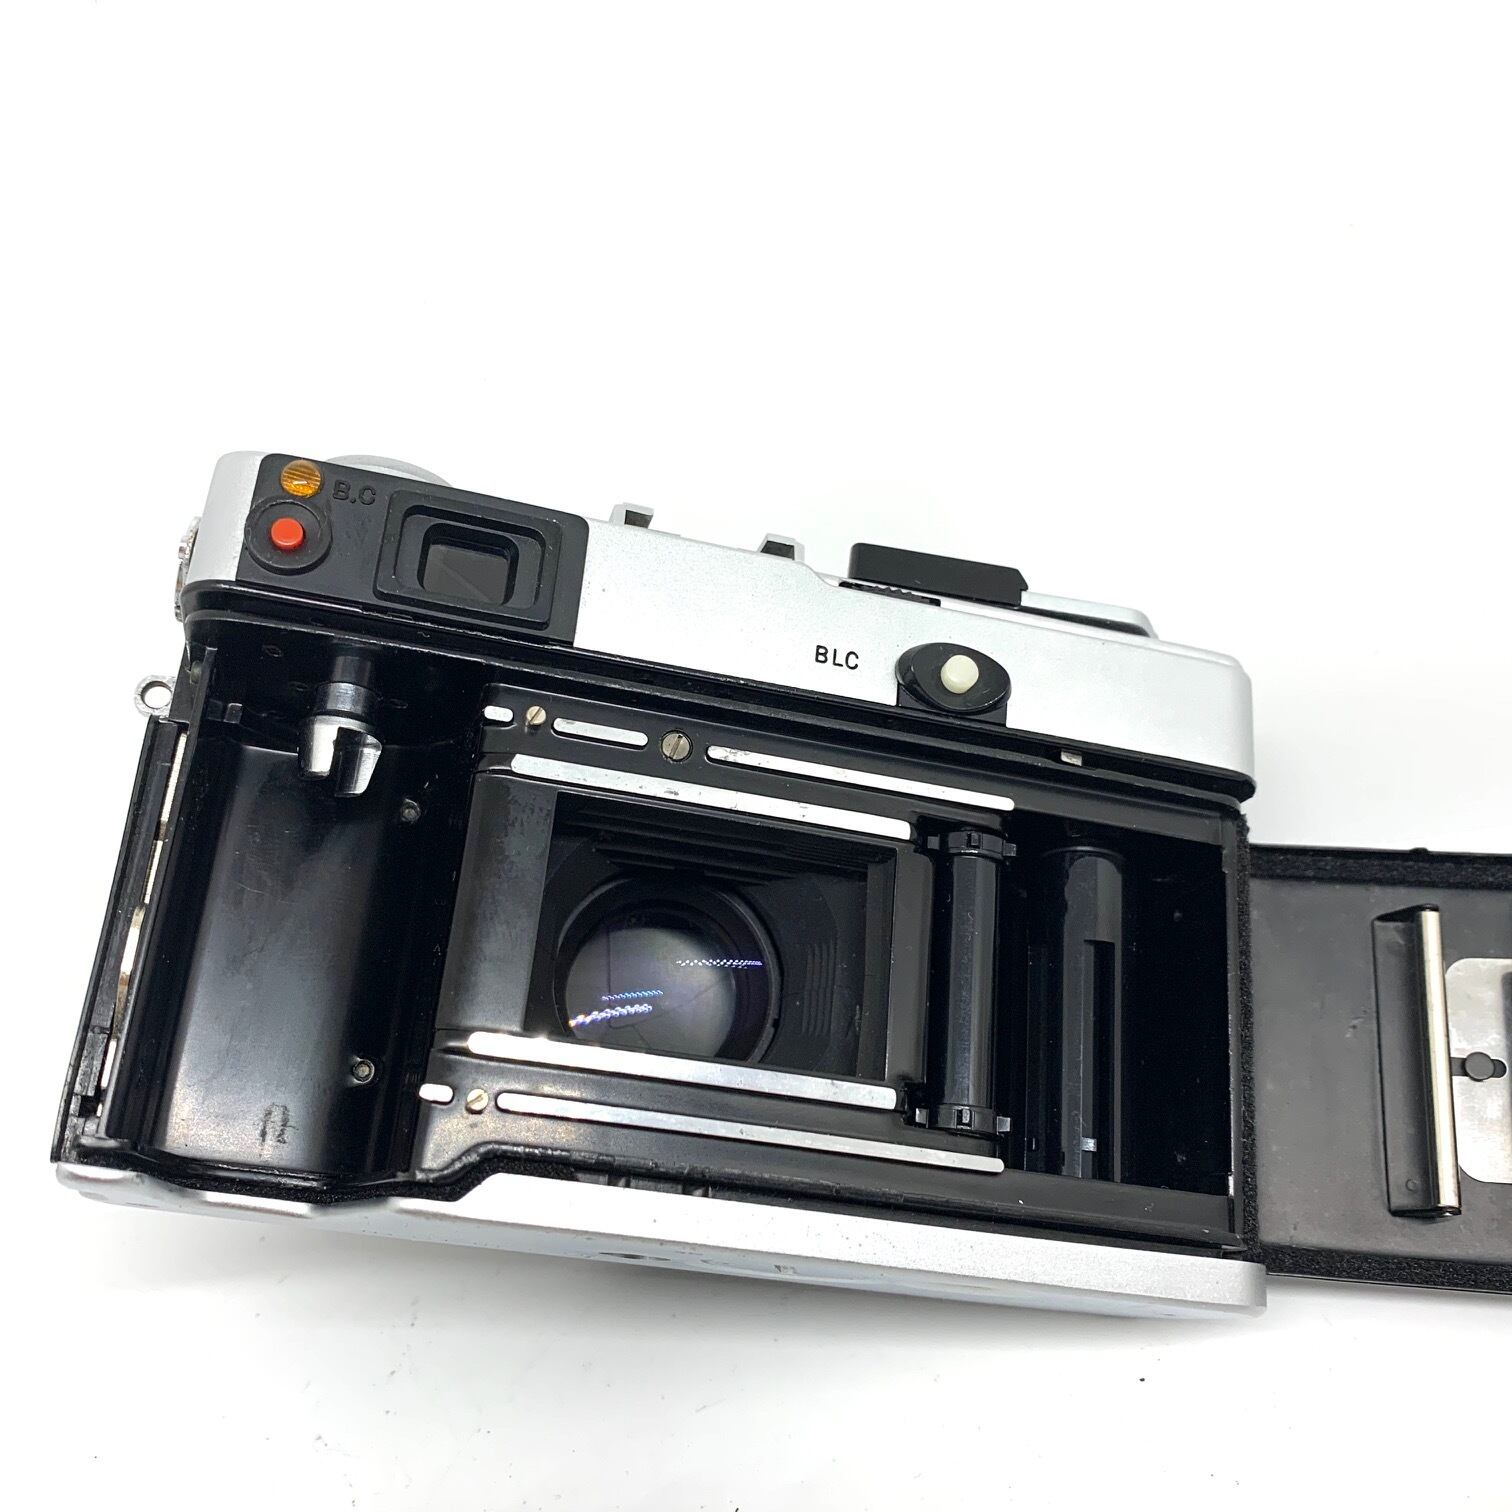 20-109リメイクカメラ OLYMPUS 35DC（希望色を貼ります。）フィルム ...